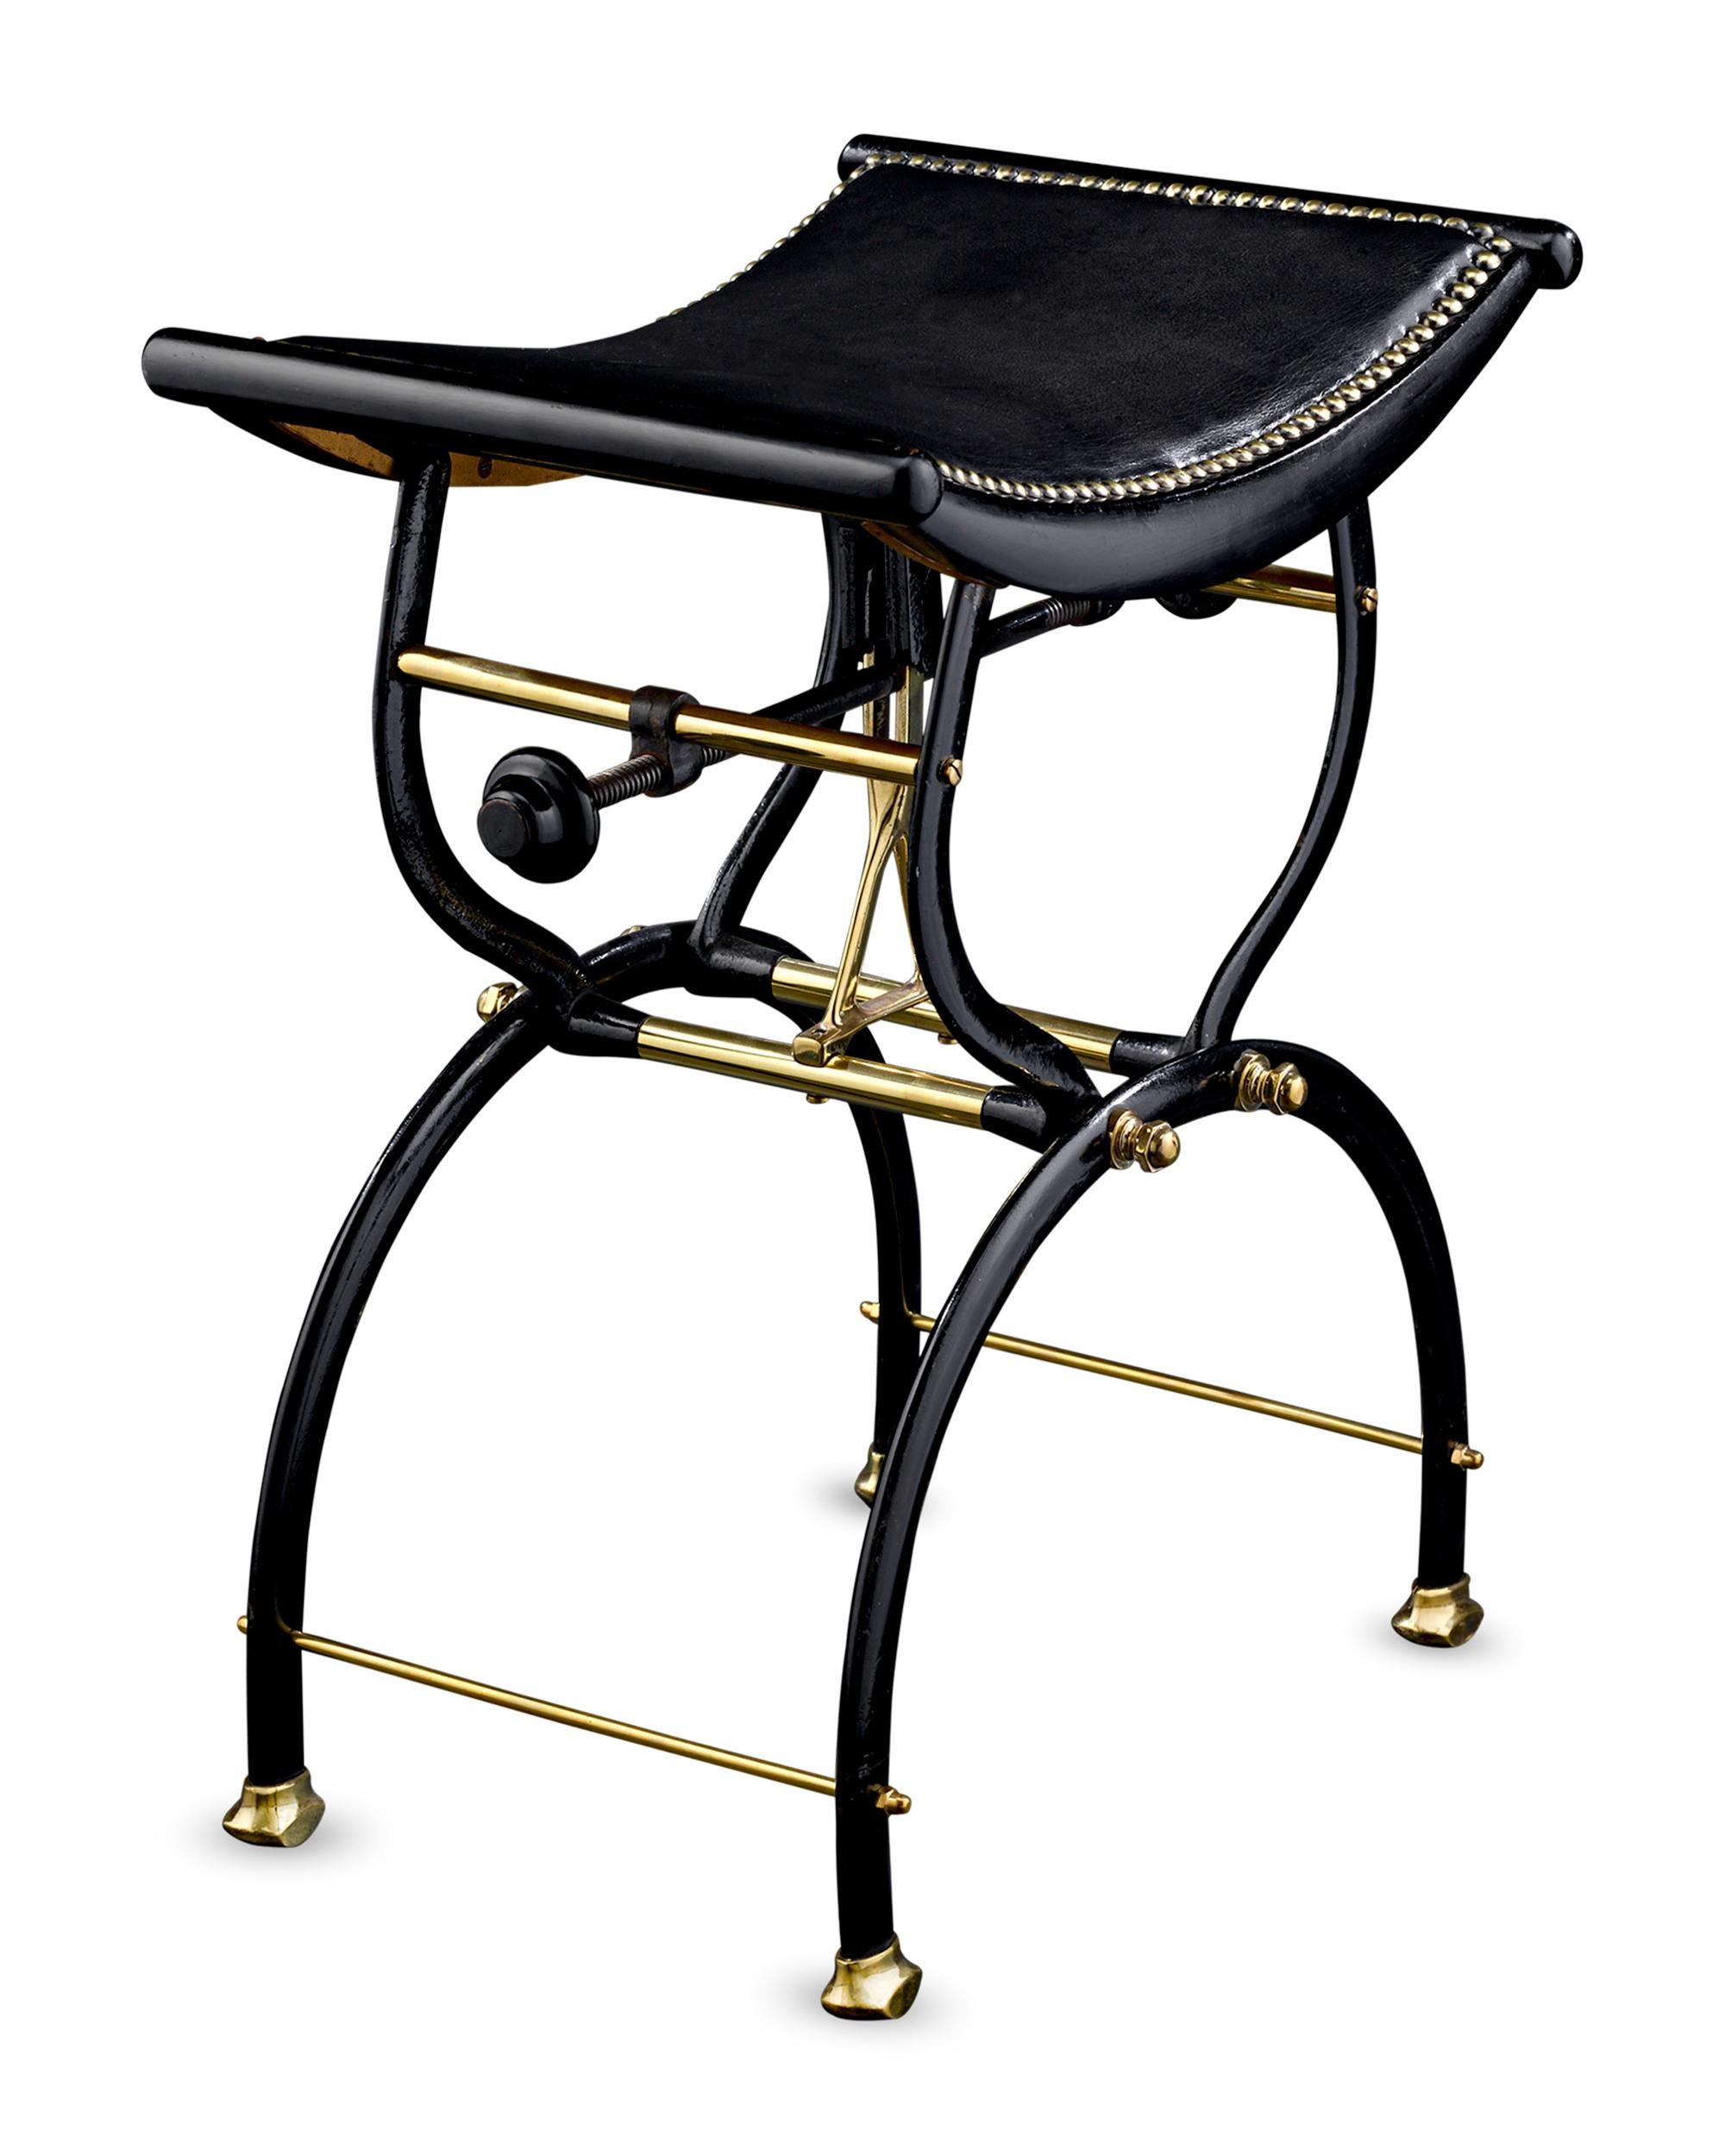 Dieser spätviktorianische Klavierhocker wurde von der englischen Firma C. H. Hare & Son entworfen, die das einzigartige X-Rahmen-Design und die halbmondförmige Sitzfläche patentierte. Der aus ebonisiertem Holz, Gusseisen und Messing gefertigte